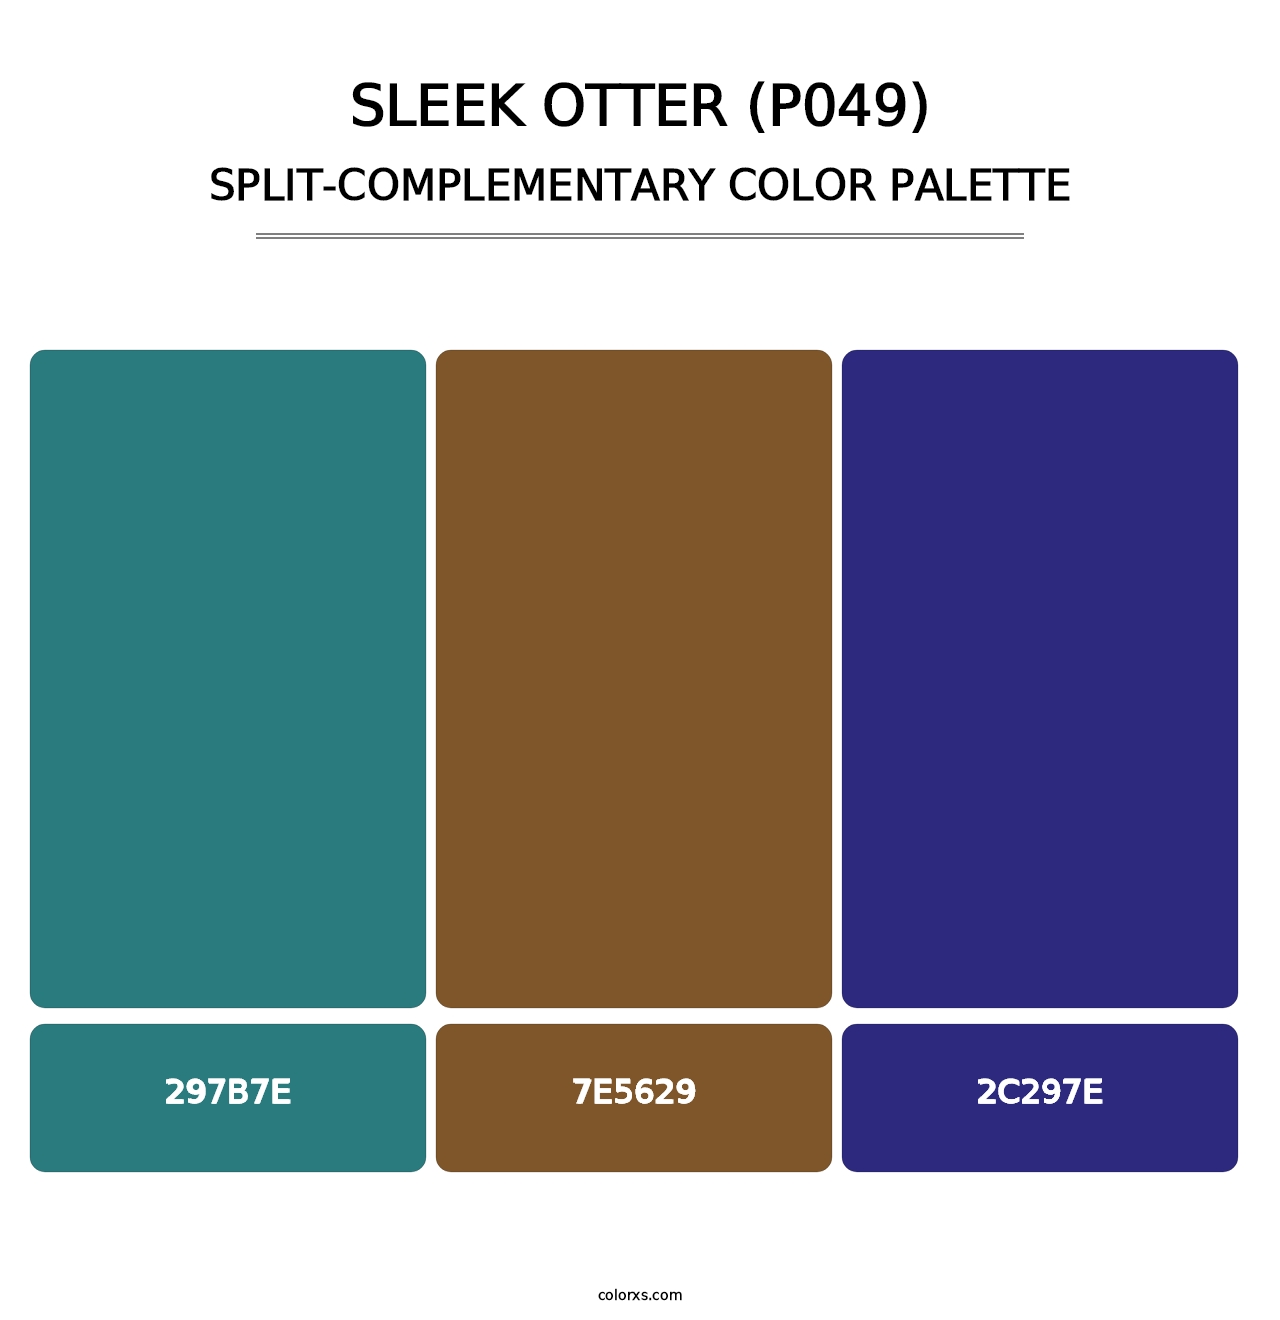 Sleek Otter (P049) - Split-Complementary Color Palette